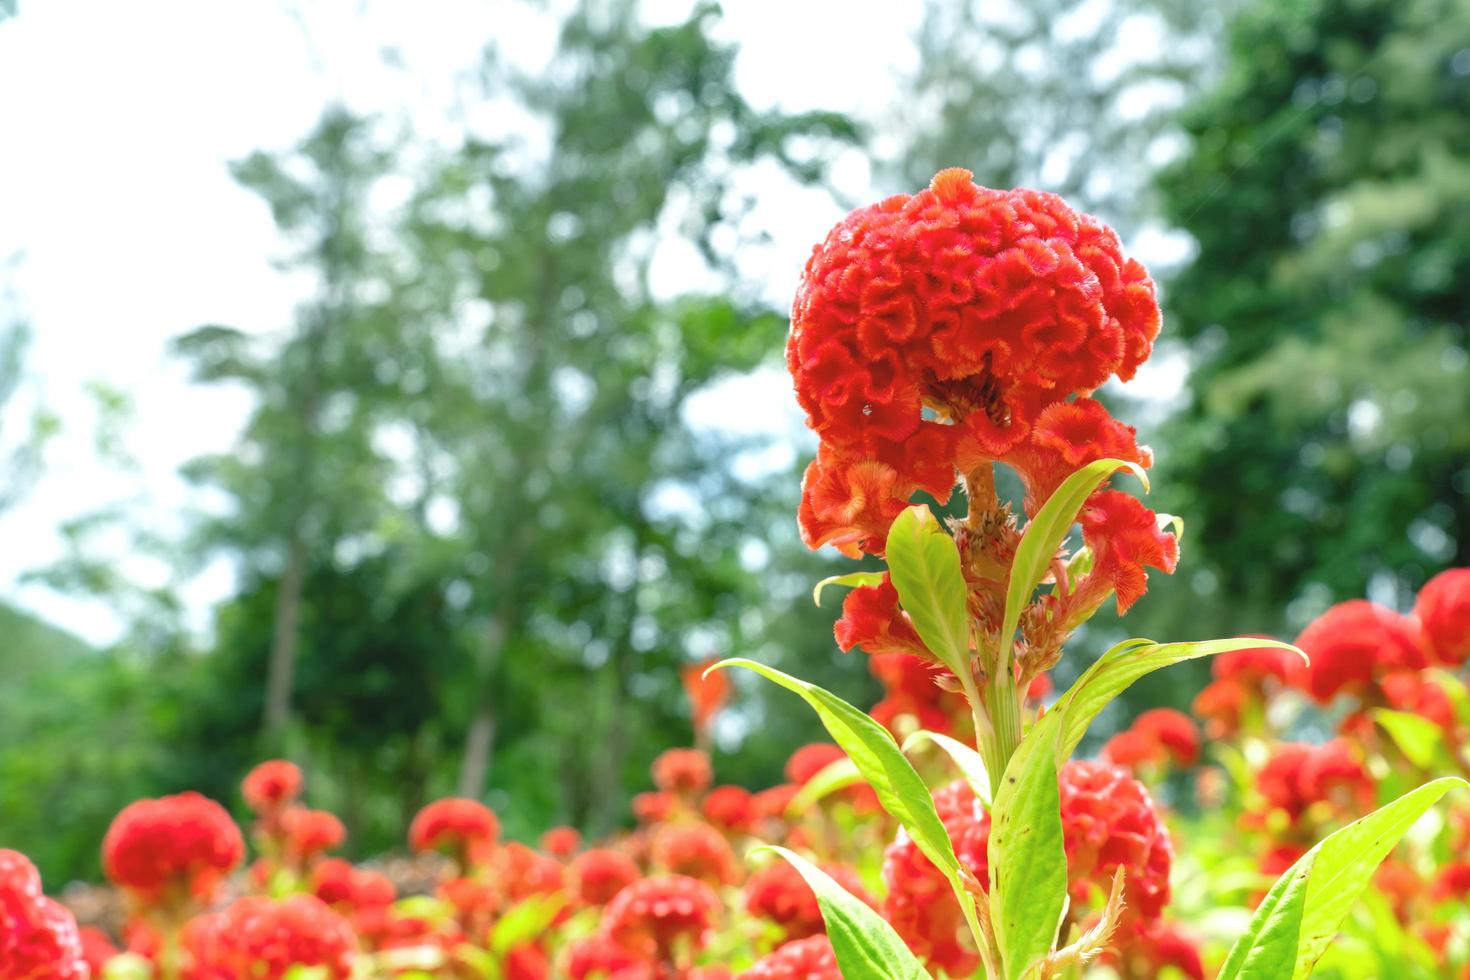 flores de crista de galo vermelhas no jardim foto